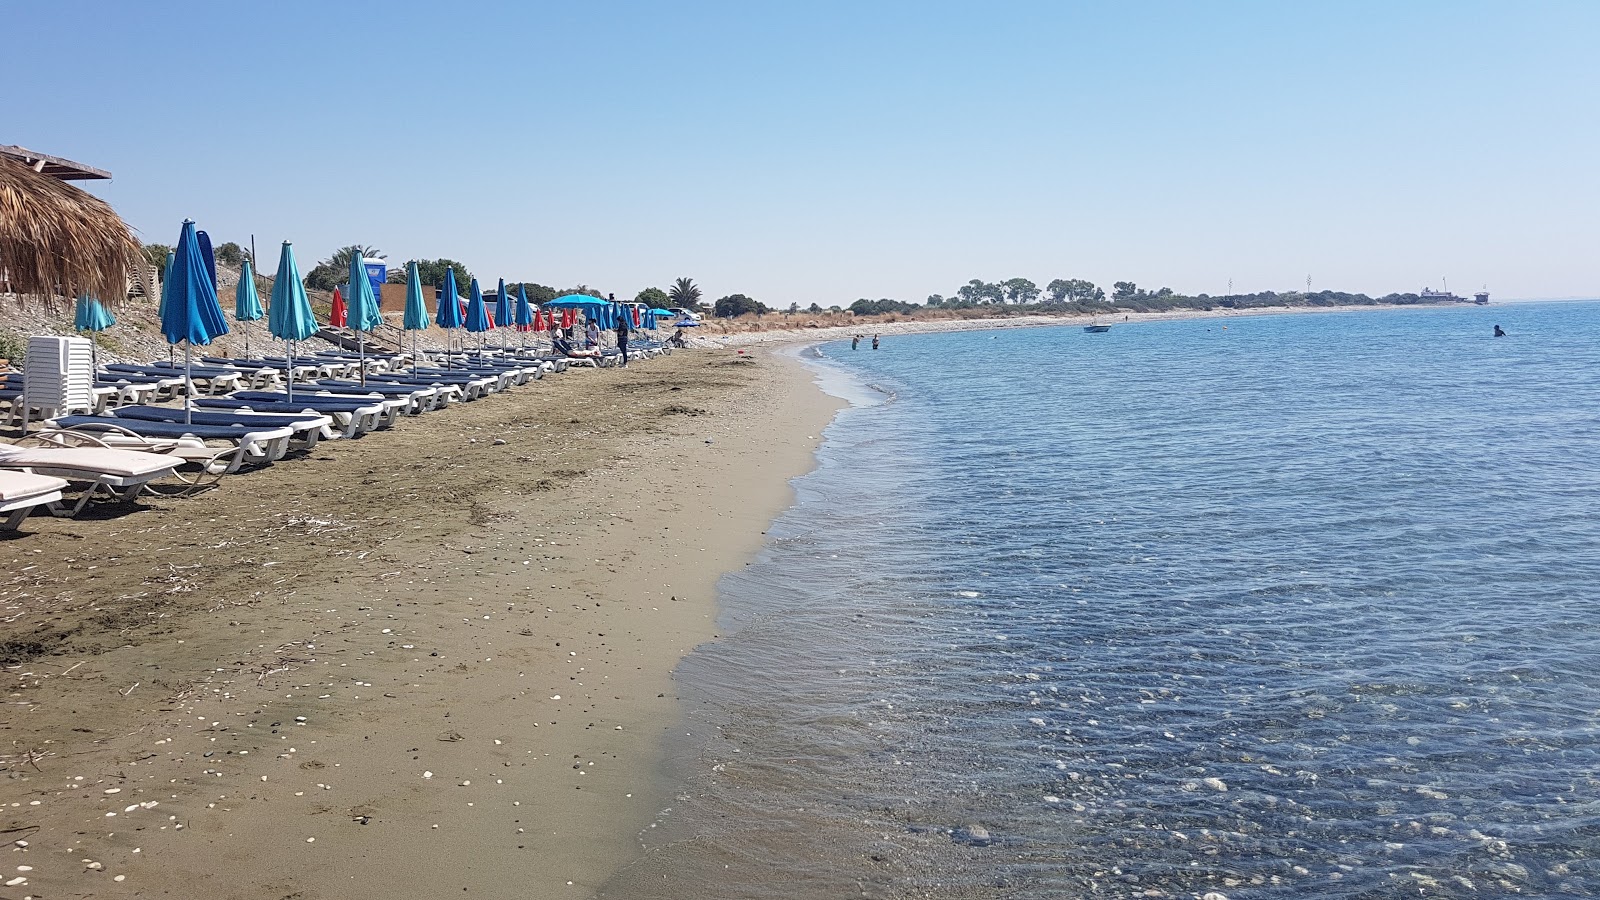 Fotografie cu Mazotos beach și așezarea